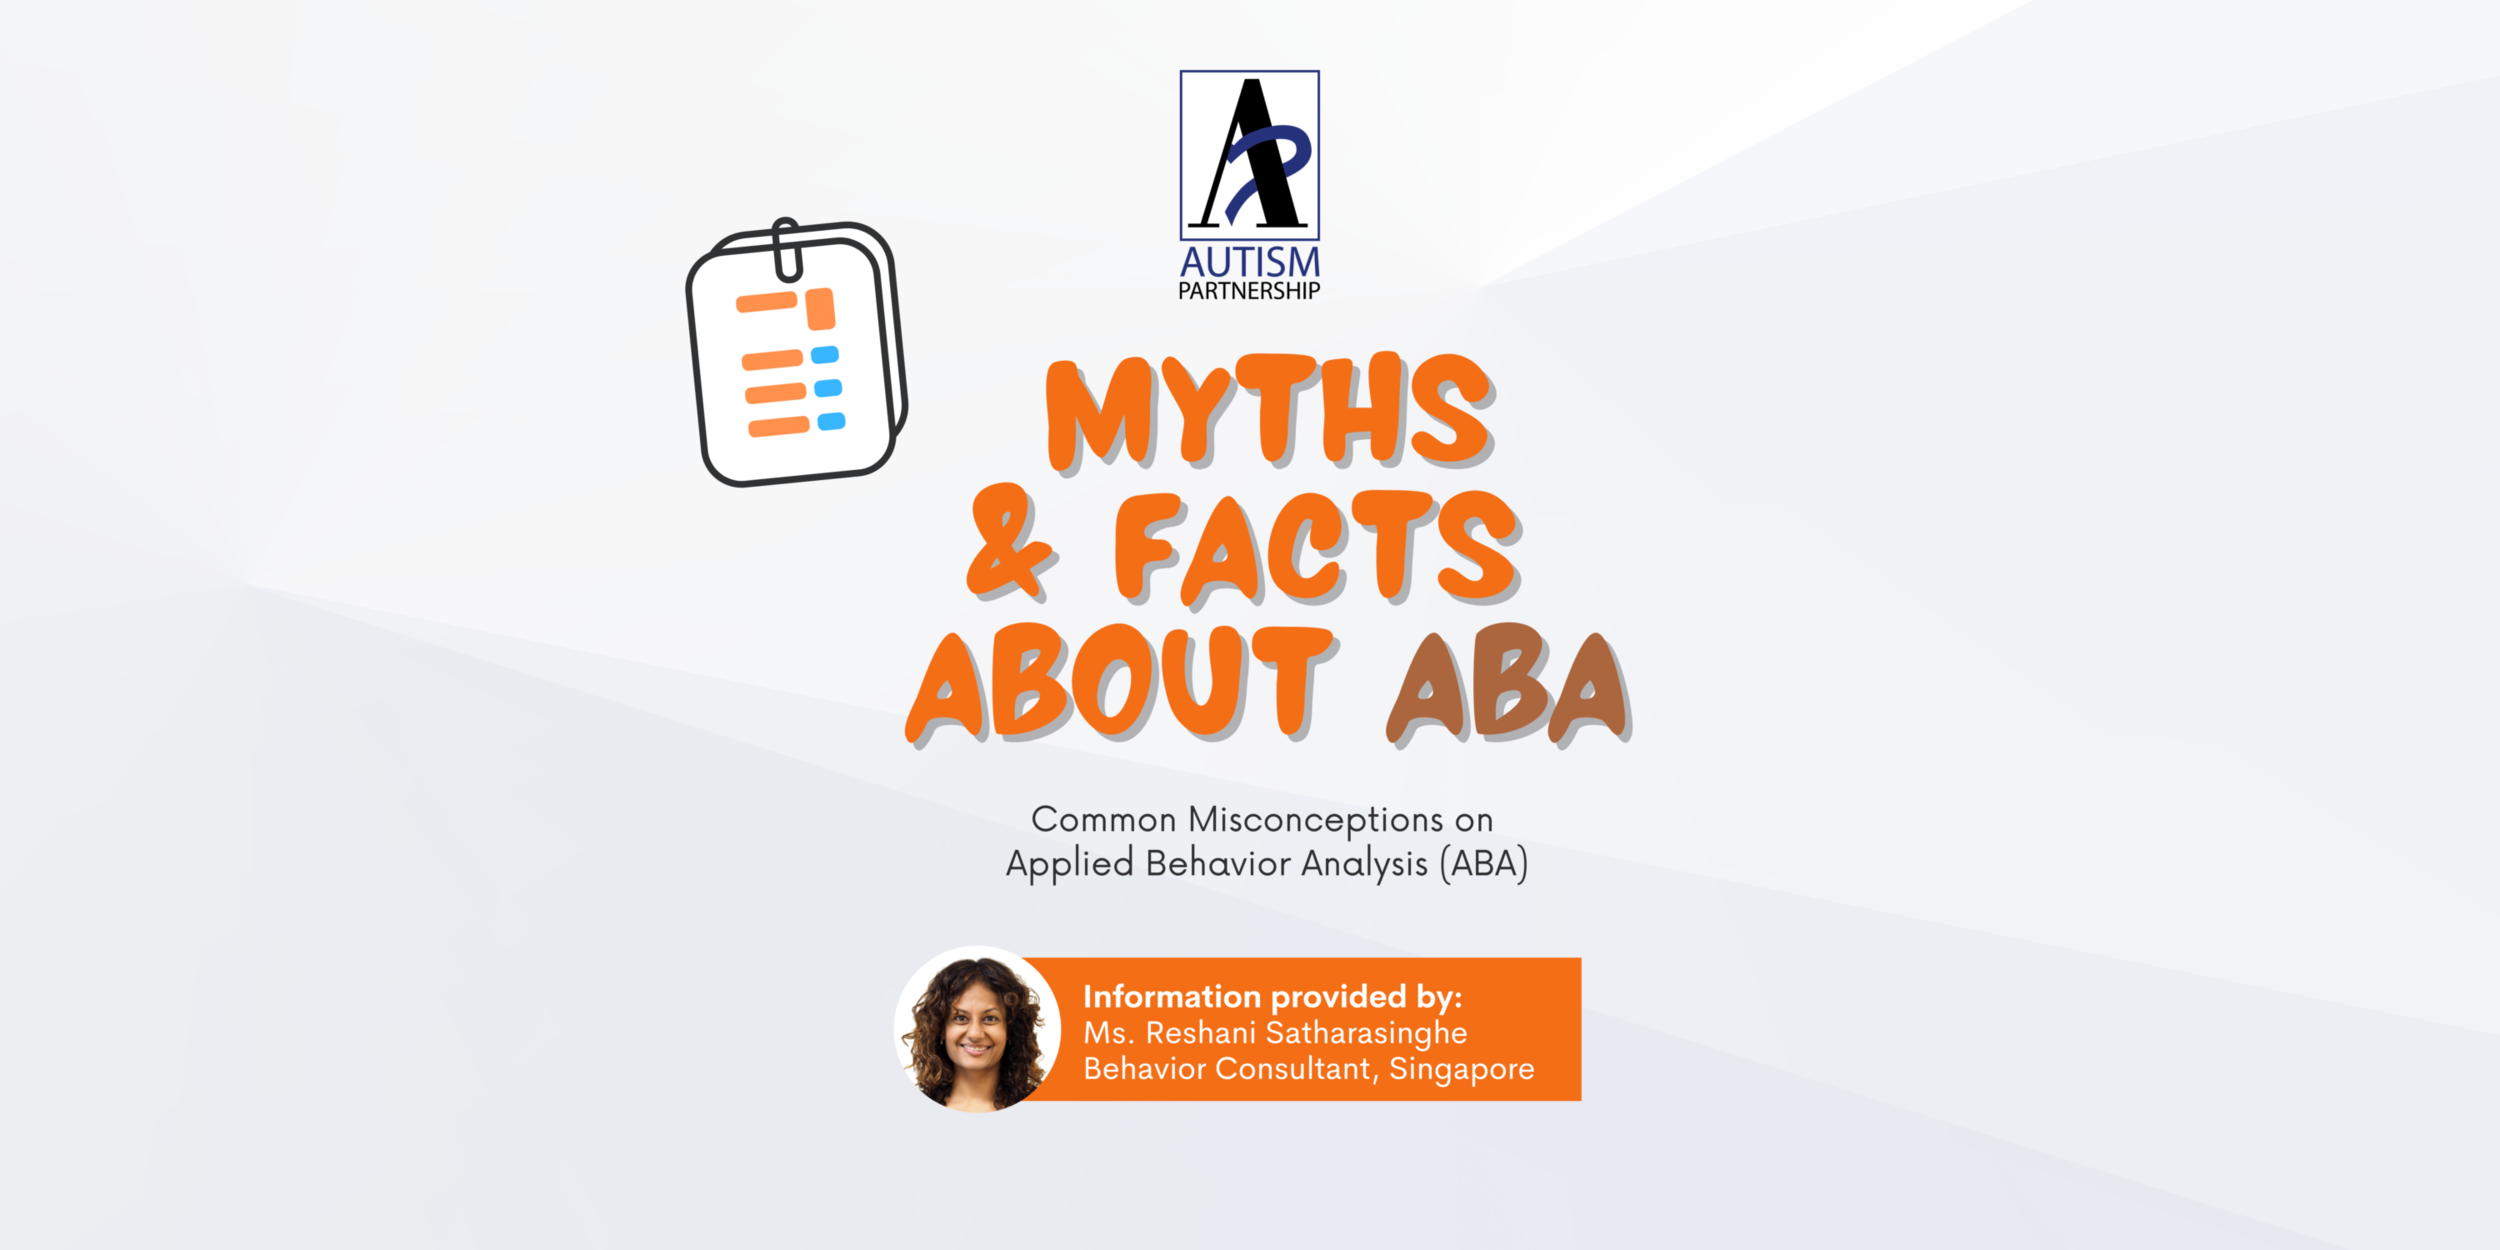 ABA MYTHS & FACTS